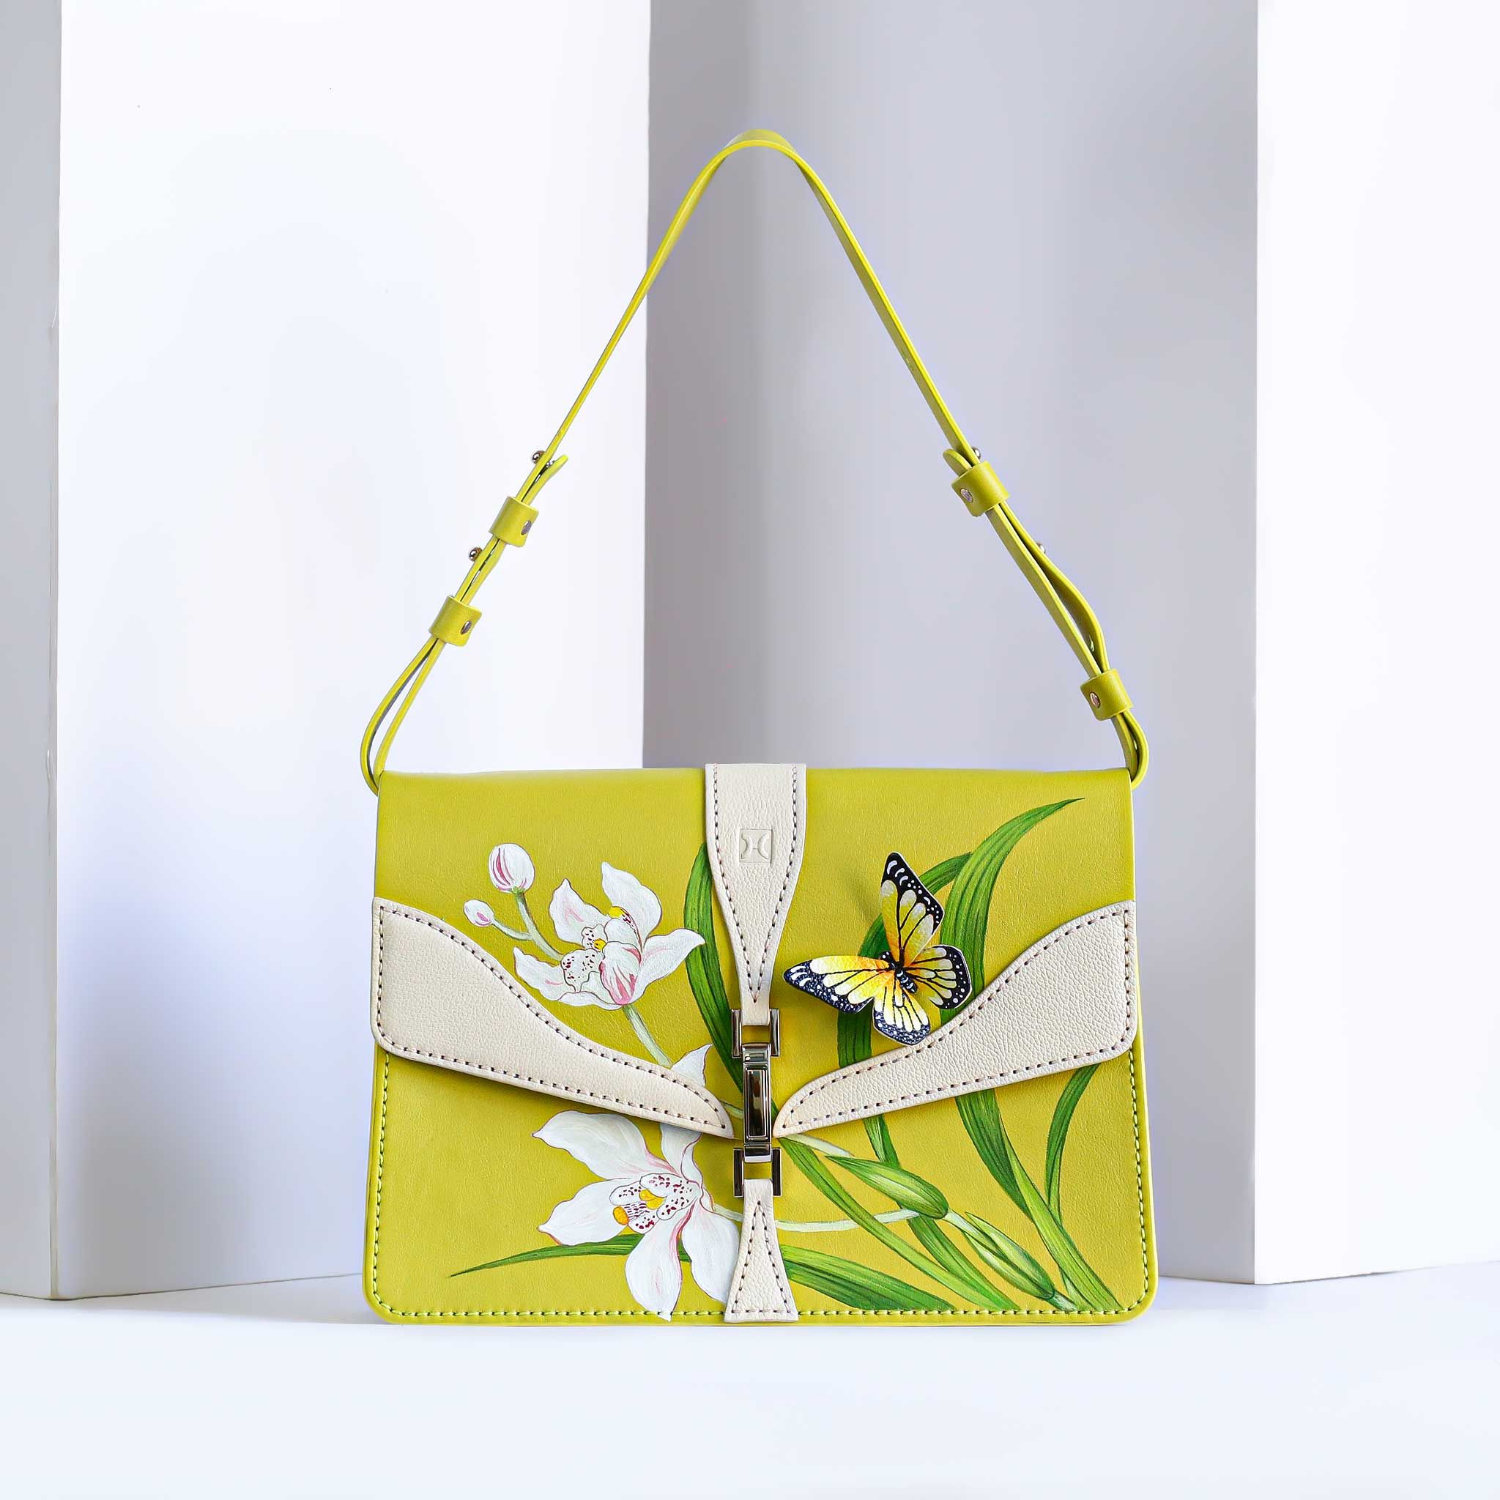 Handmade Sunny Shoulder Bag